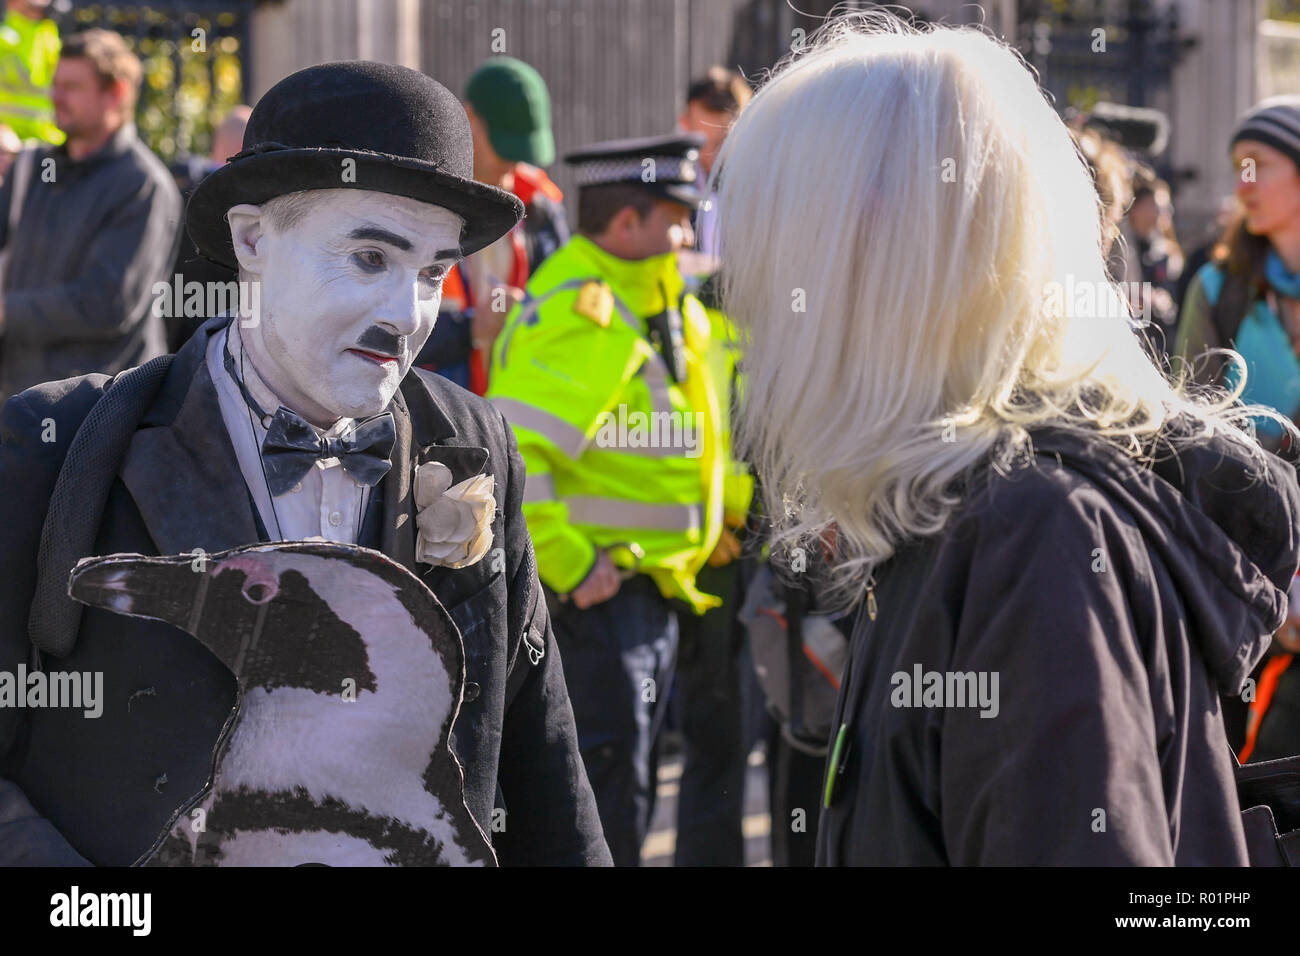 London, Großbritannien, 31. Oktober 2018 die Demonstranten die Straße vor dem Unterhaus Block mit Ein Aufruf zu direkter Aktion über Umweltfragen. Wie fracking. Kredit Ian Davidson/Alamy leben Nachrichten Stockfoto